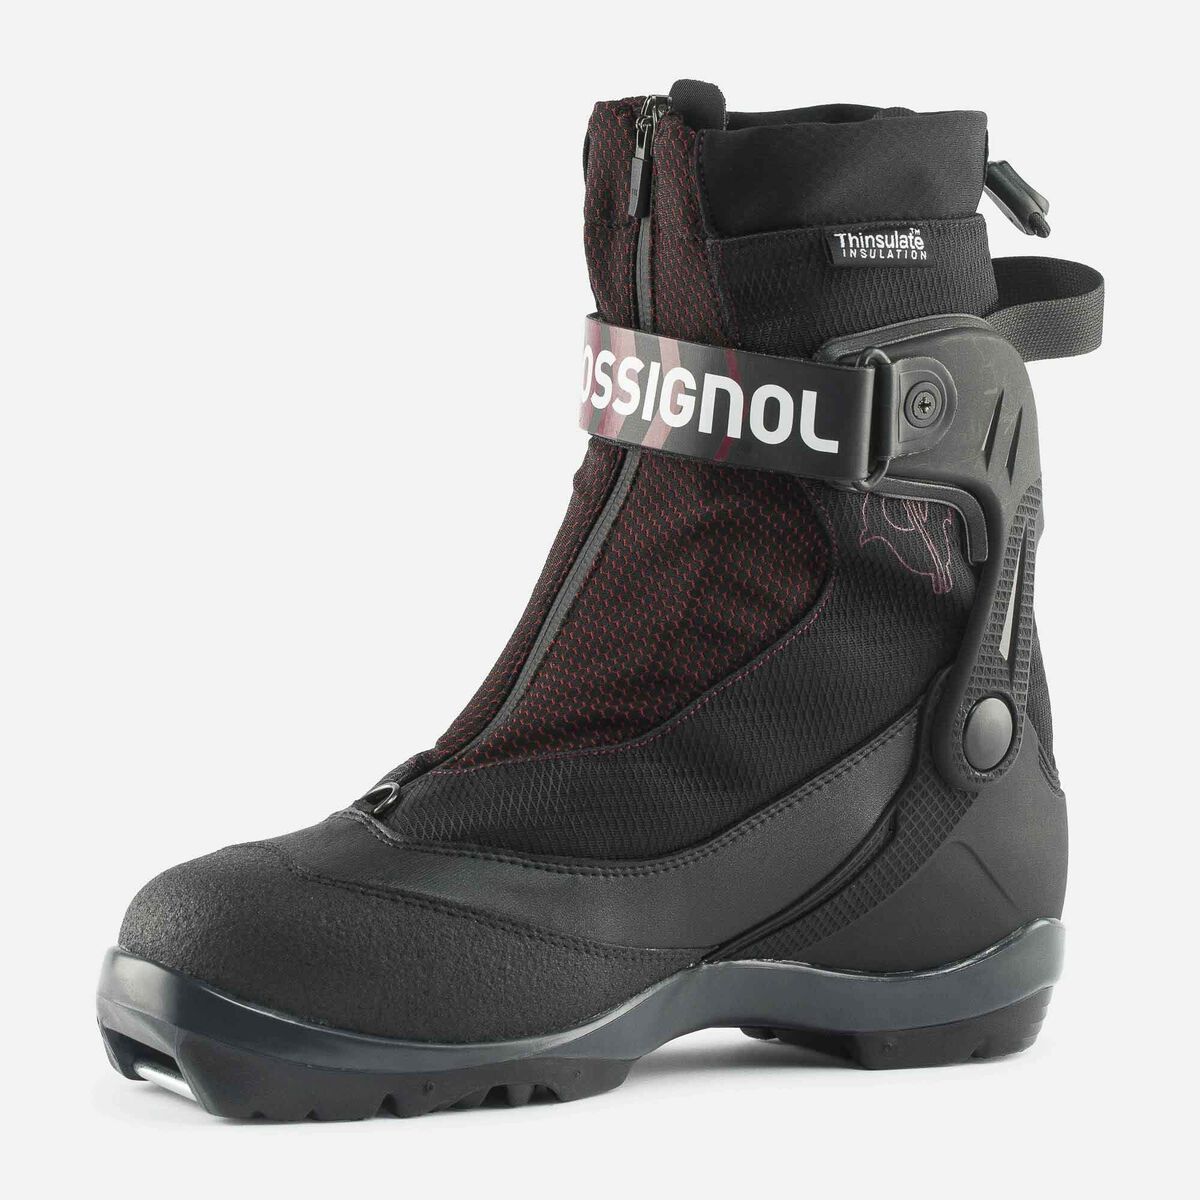 Chaussures de ski nordique Backcountry Unisexe Bc X10